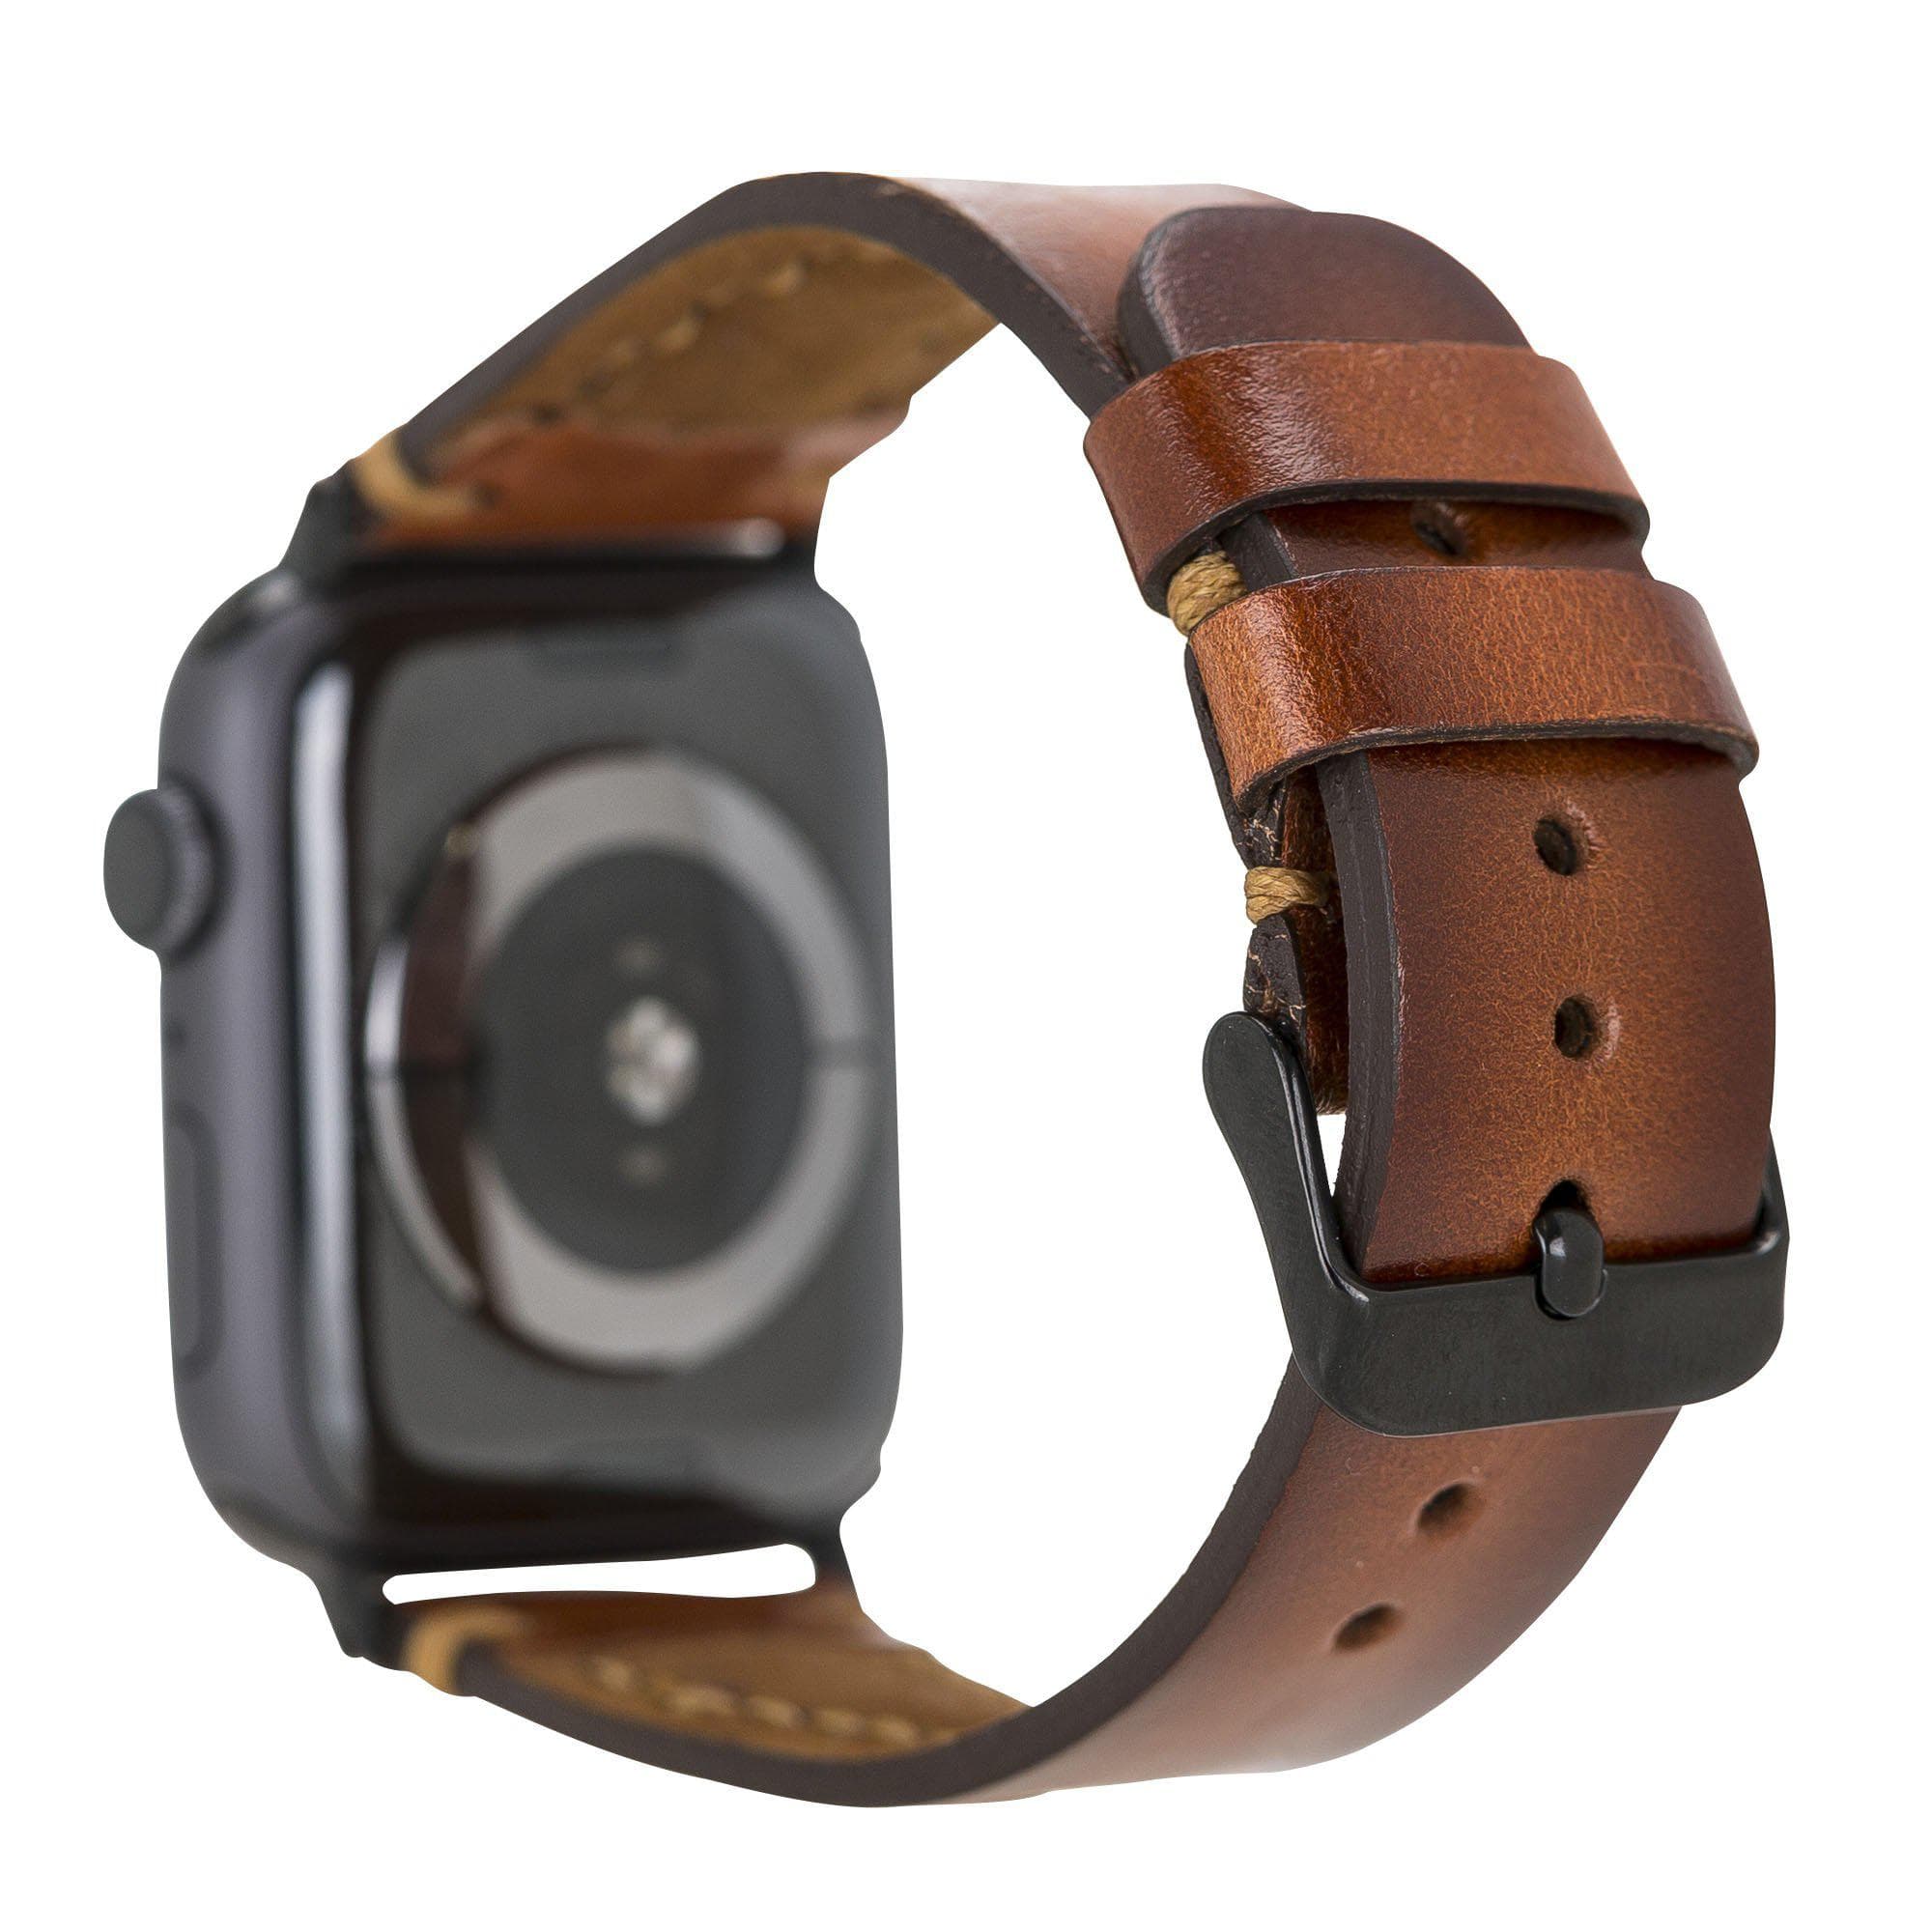 B2B - Leather Apple Watch Bands - Avilla Style Bomonti